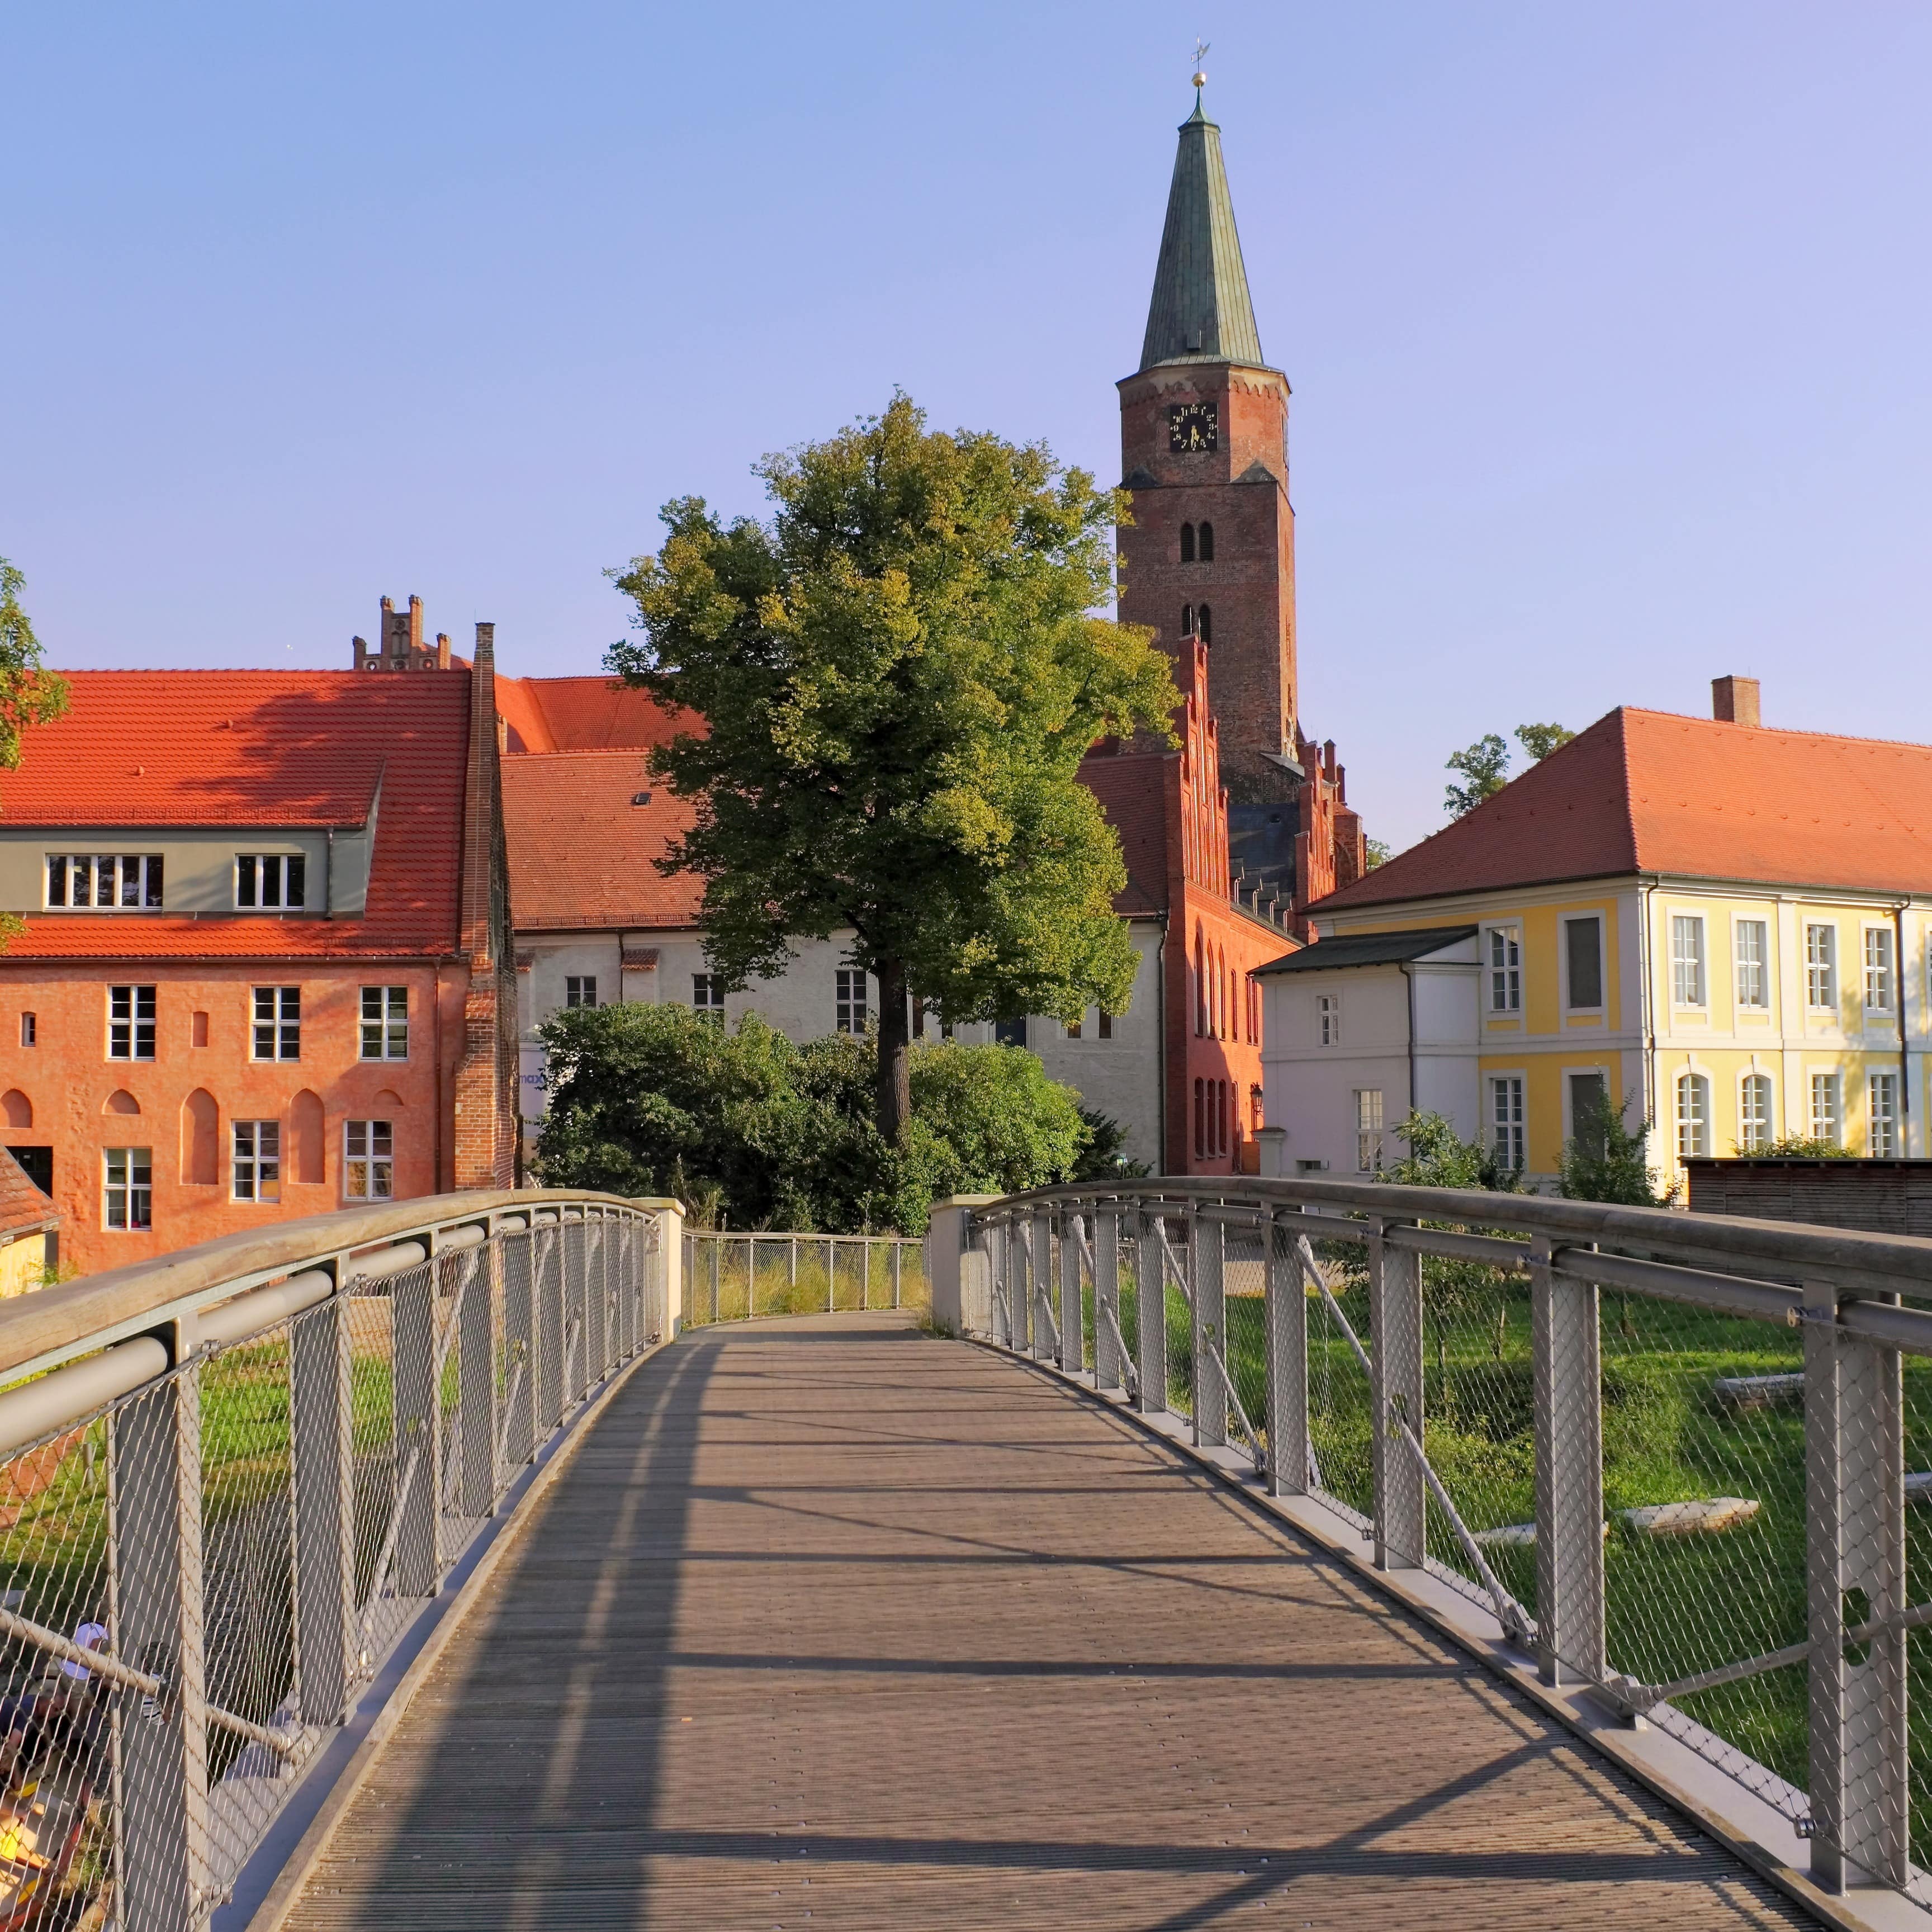 Blick eine Brücke entlang, die zu historischen Gebäuden in Brandenburg an der Havel führt.